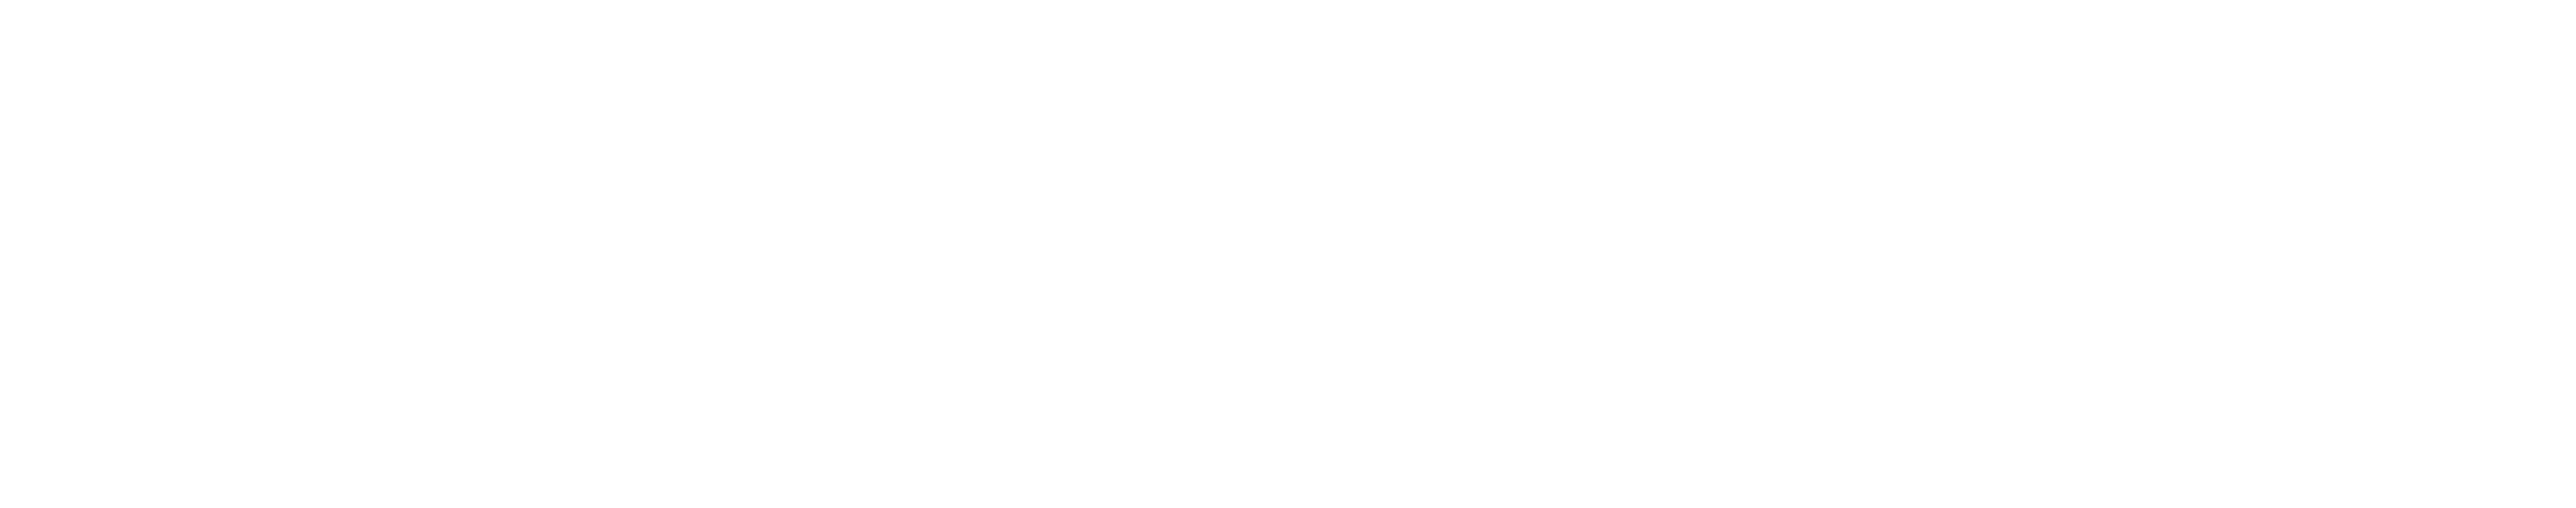 Sonia Serrano Eventos